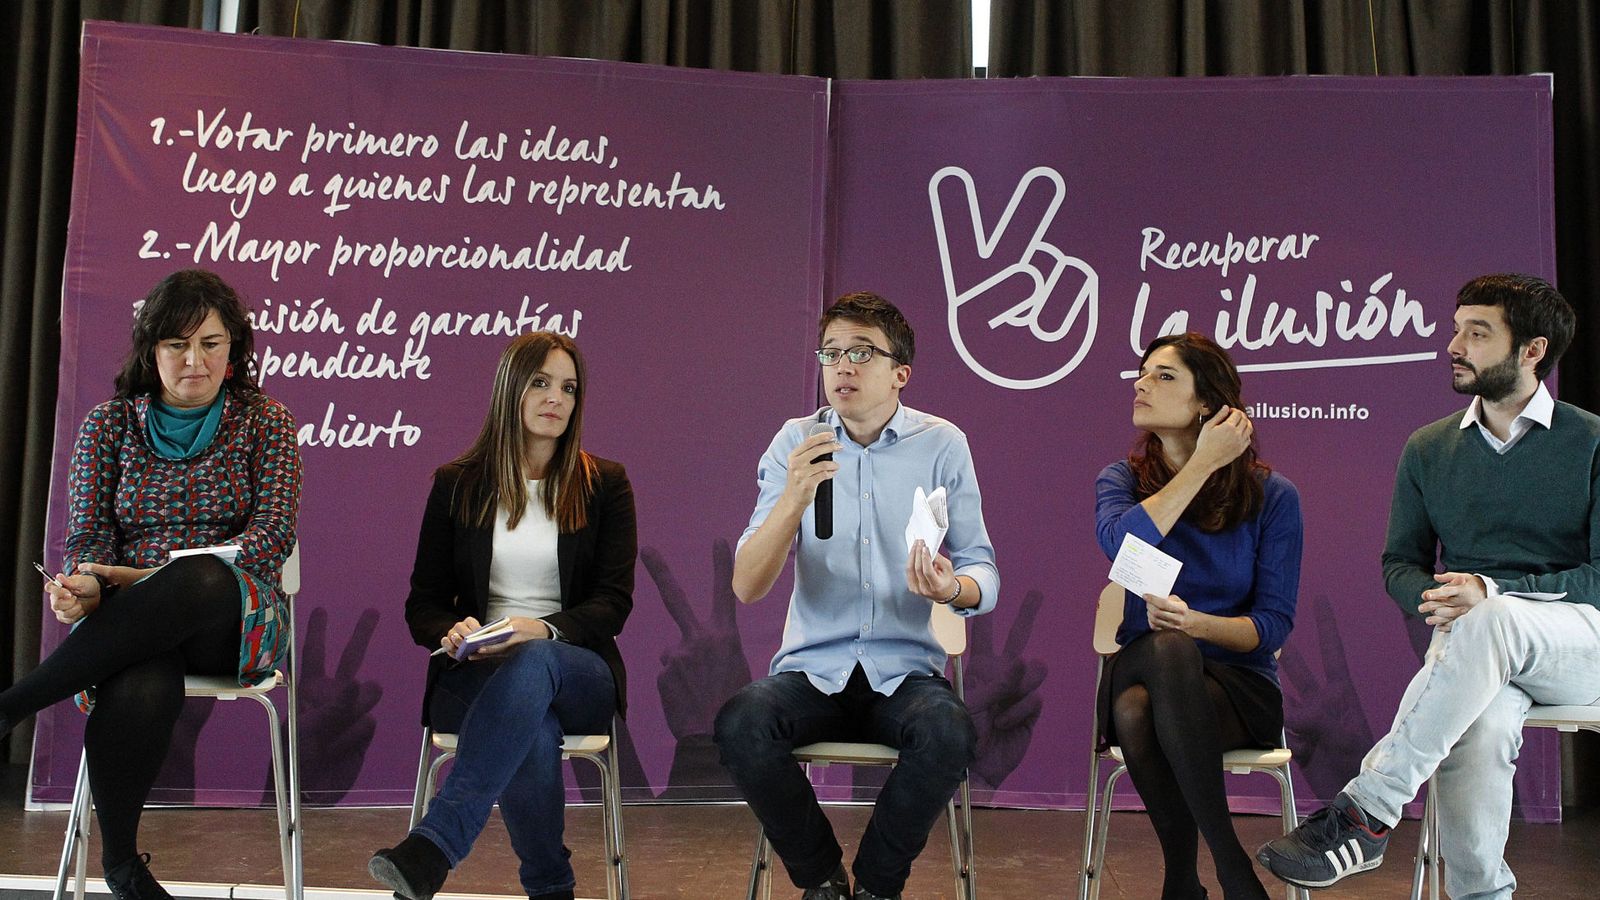 Foto: El número dos de Podemos Íñigo Errejón, durante la presentación del proyecto "recuperar la ilusión", junto a varios dirigentes afines. (EFE)